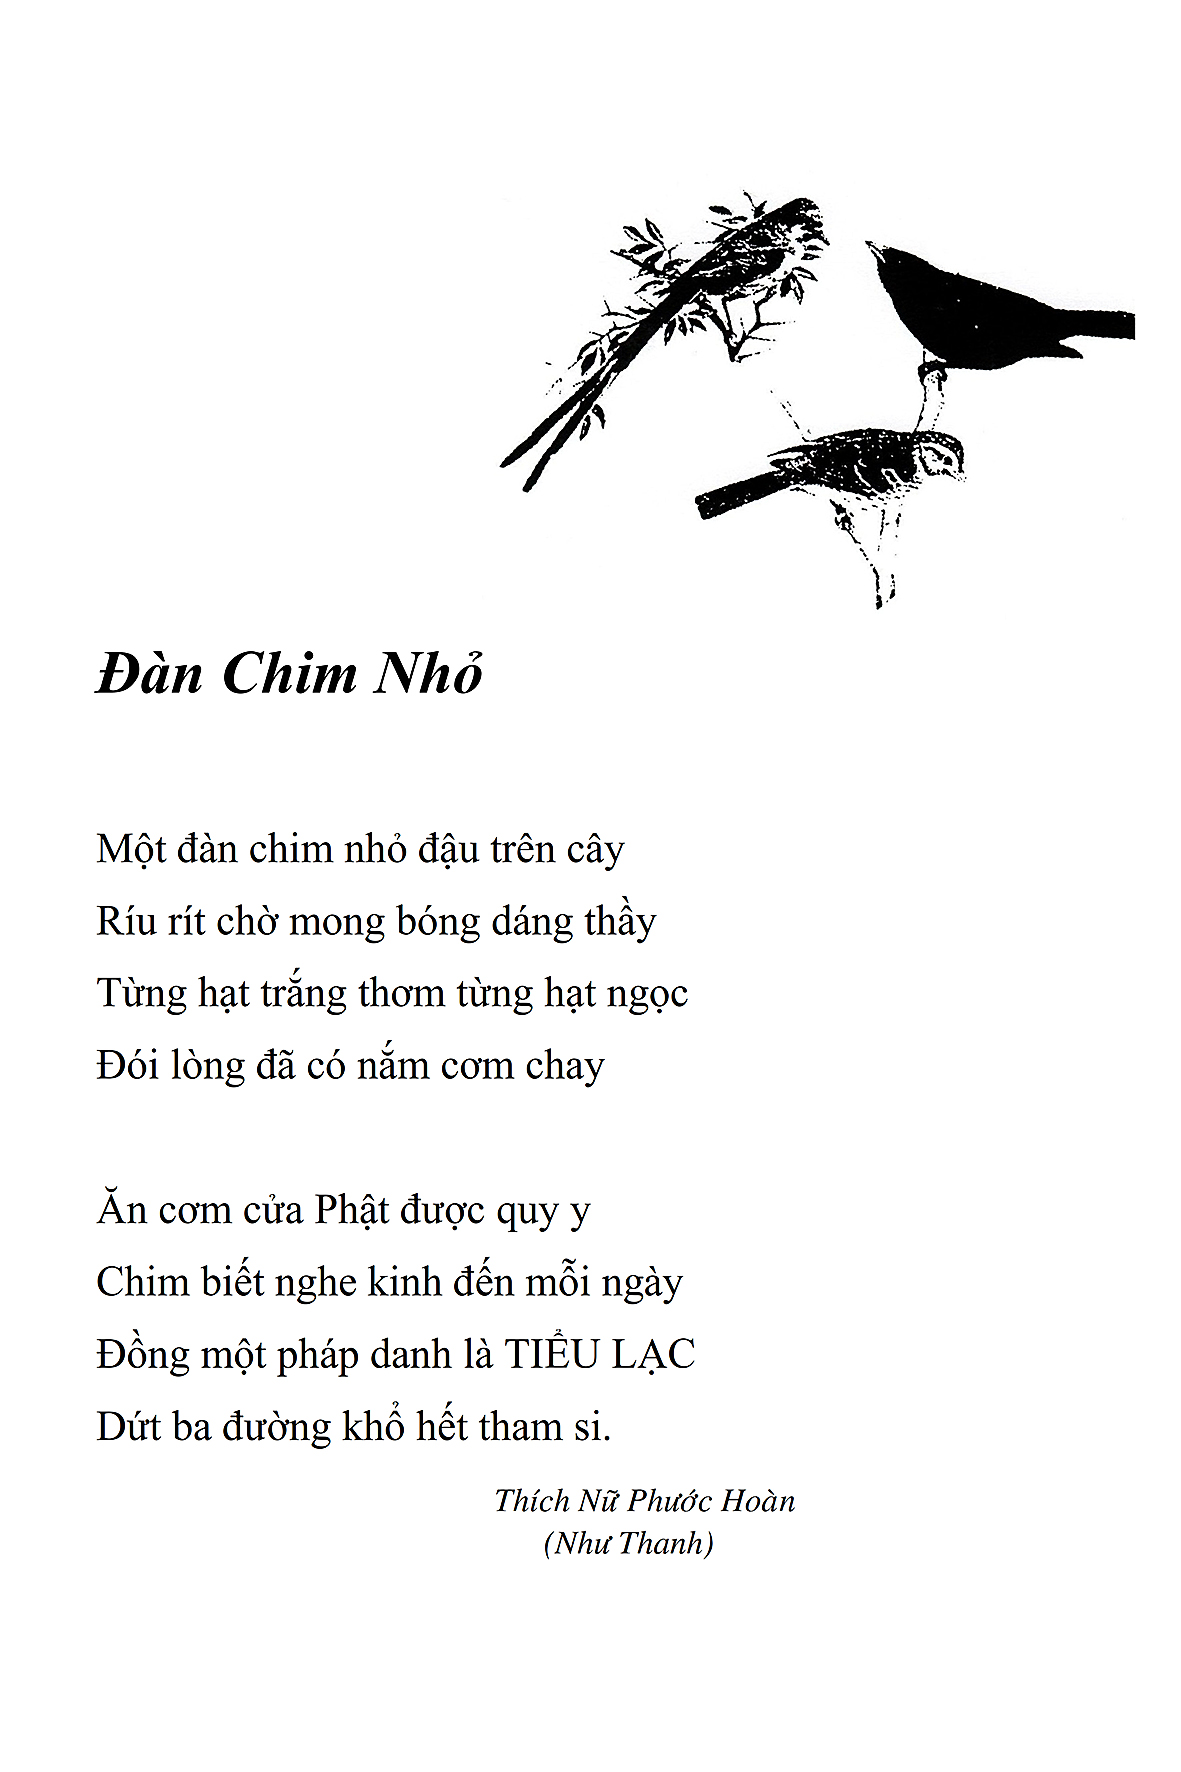 Dan Chim Nho